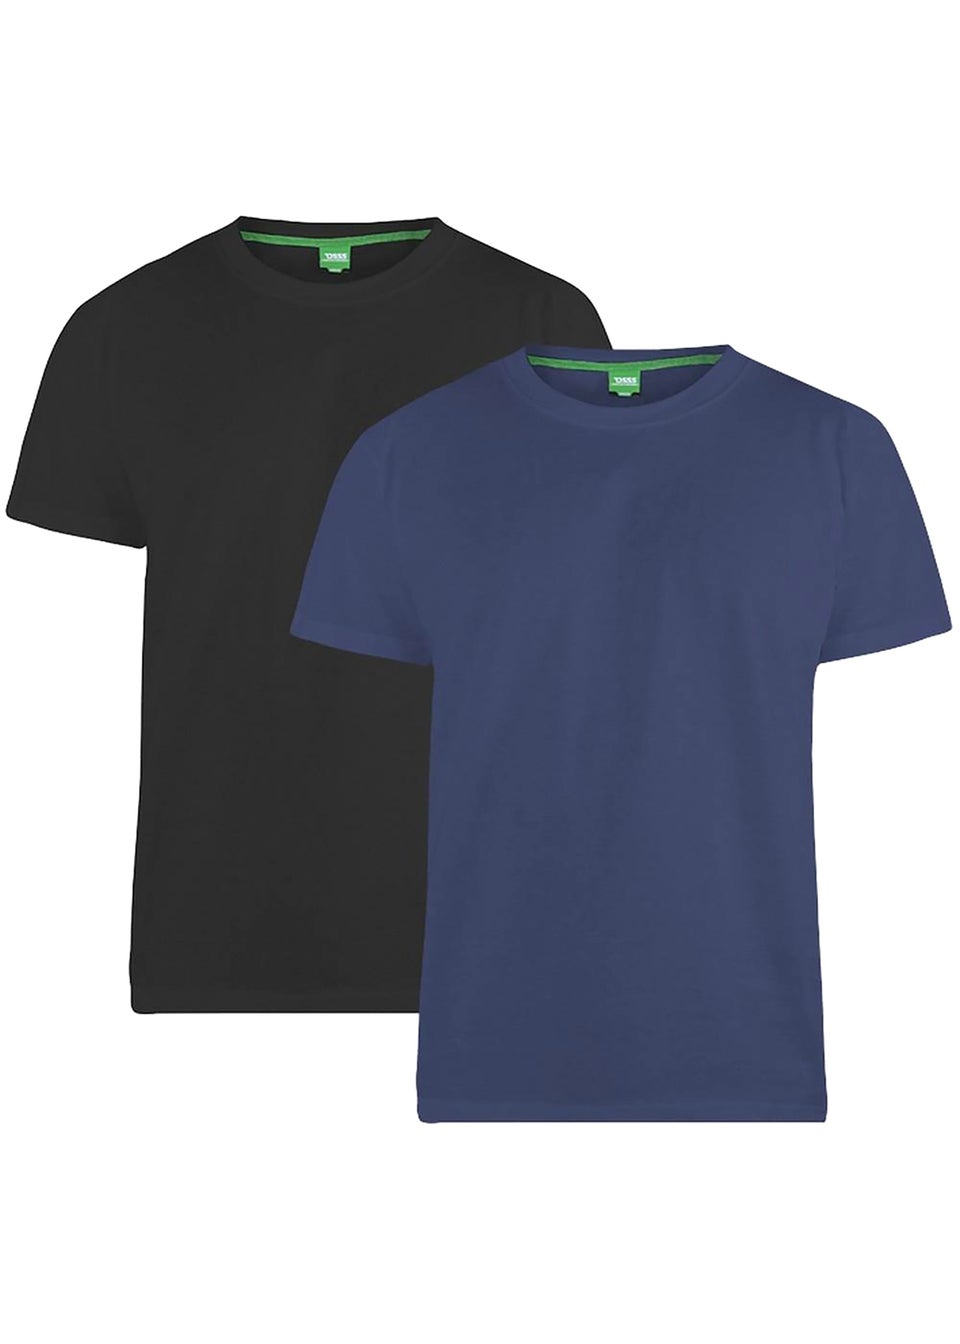 Duke Black Fenton Kingsize Round Neck T-shirts (Pack of 2)